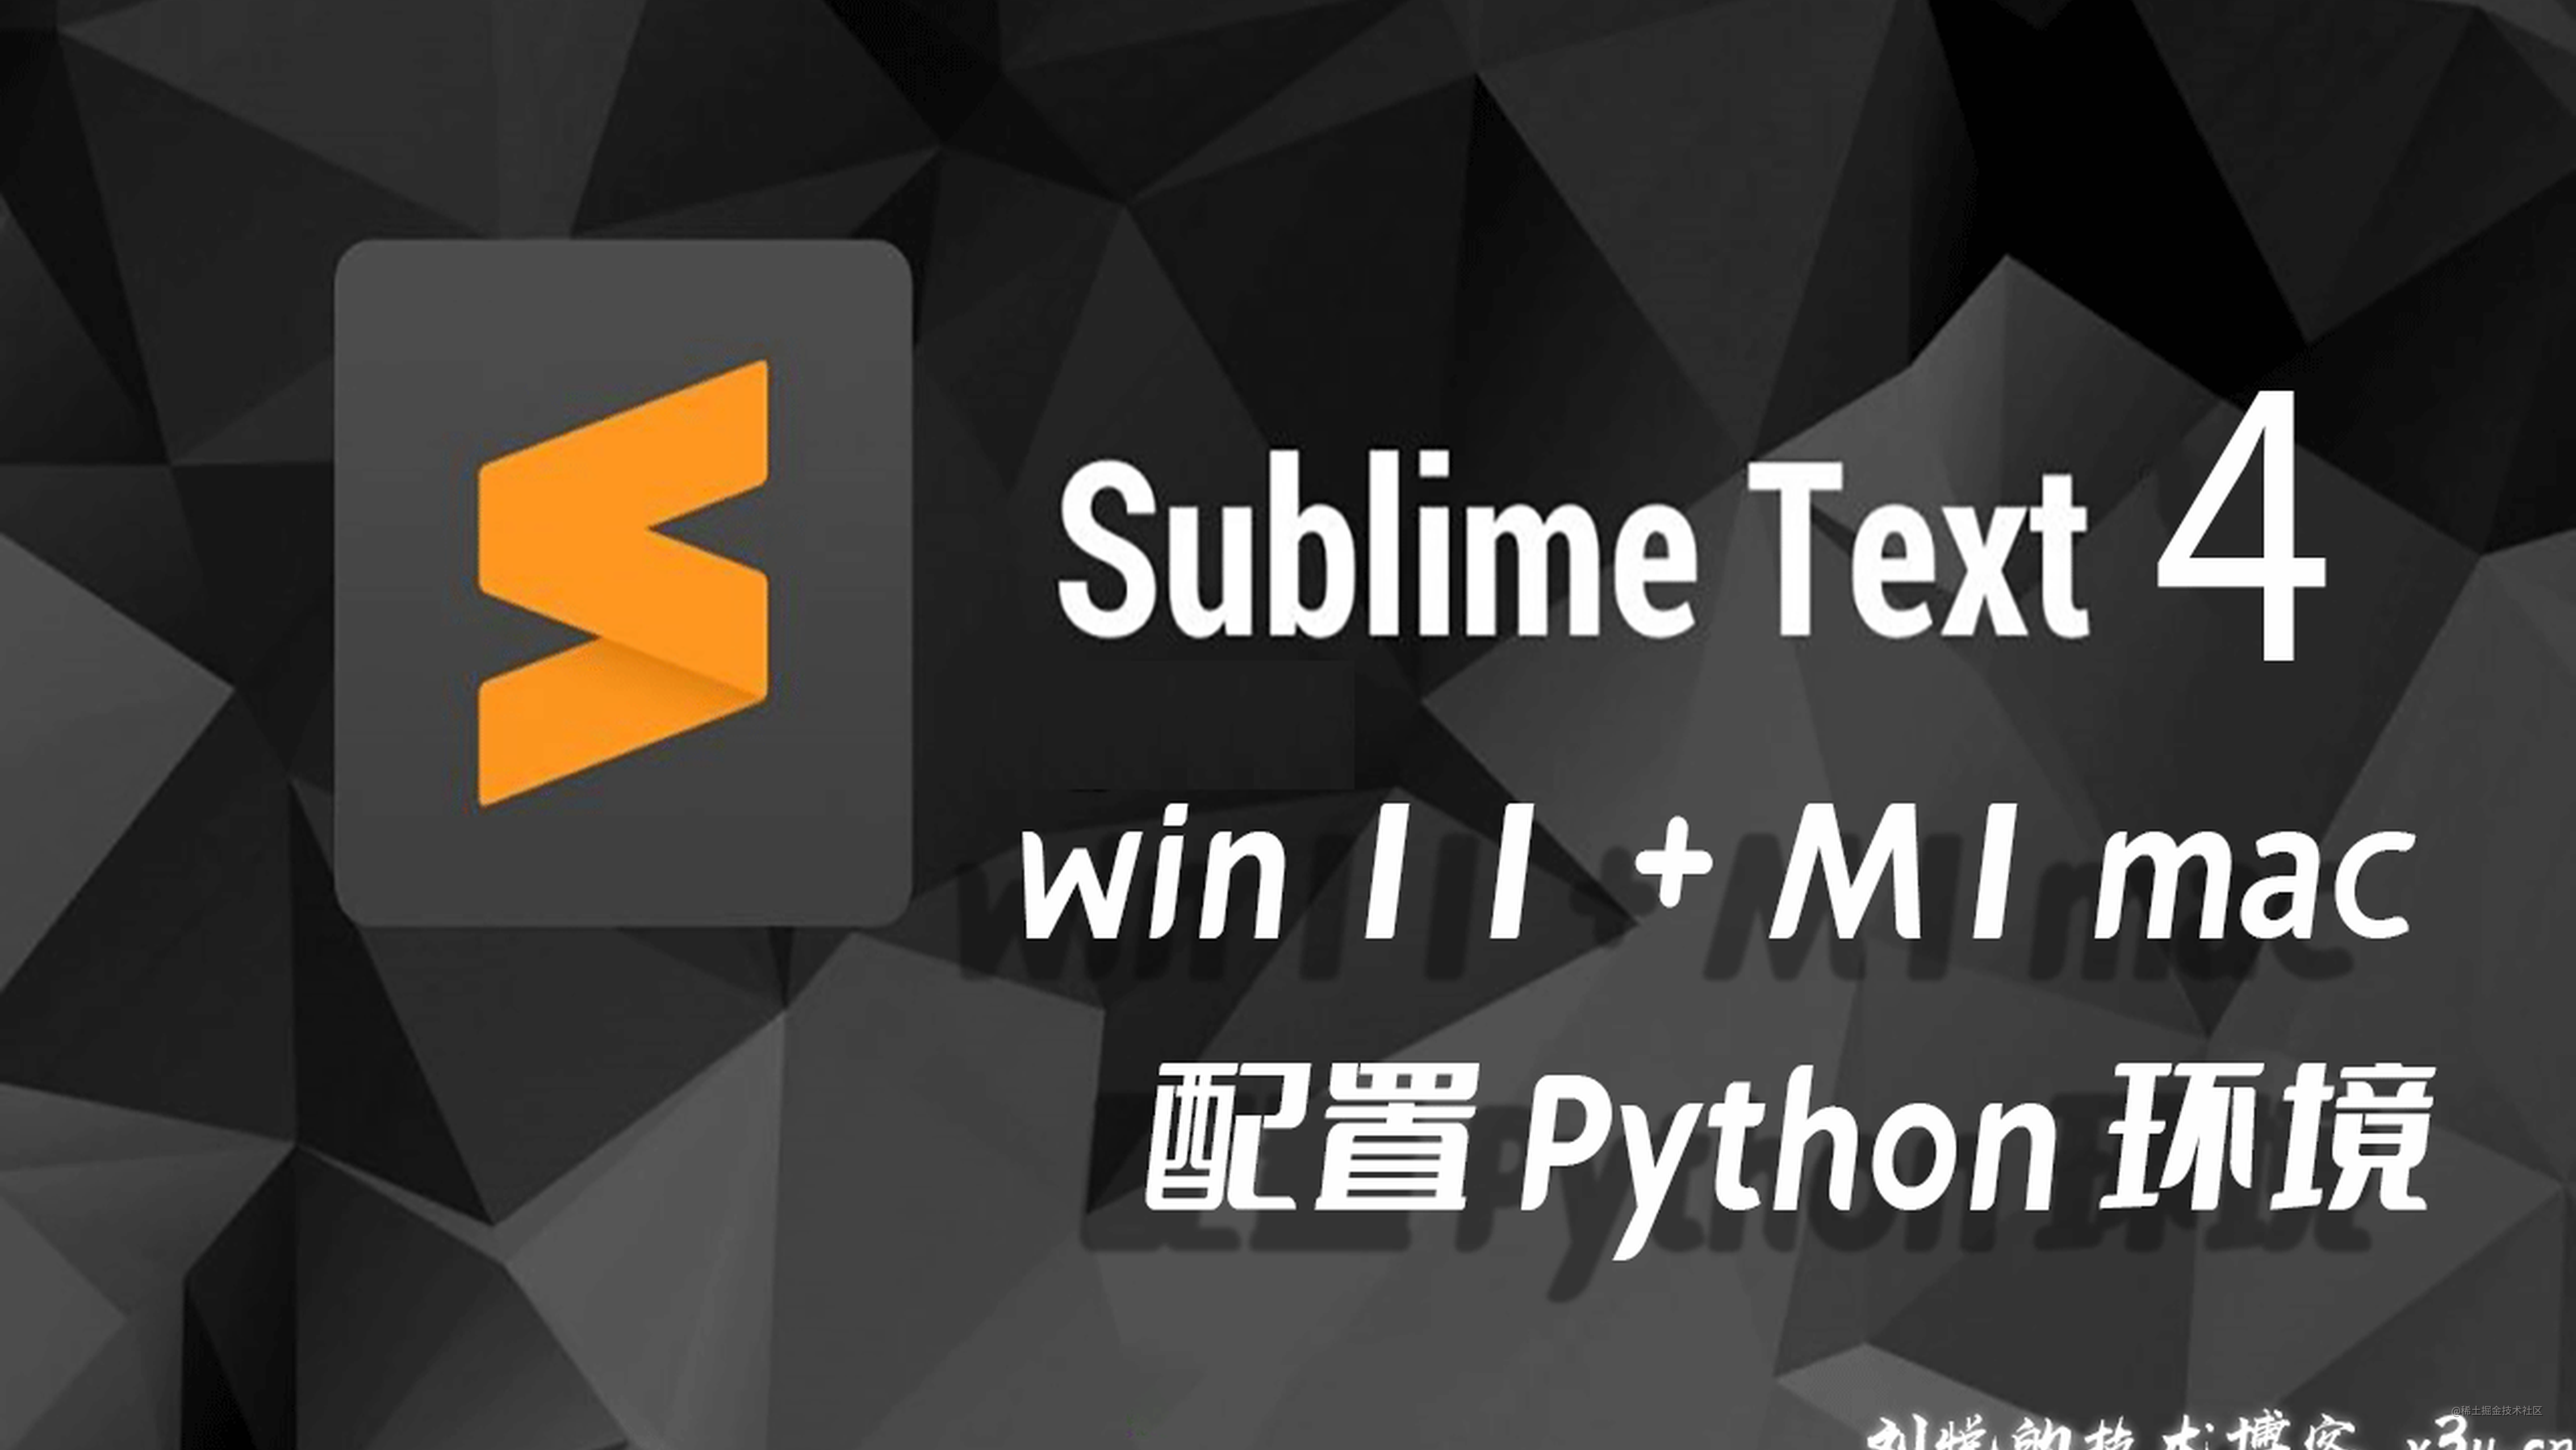 轻盈潇洒卓然不群，敏捷编辑器Sublime text 4中文配置Python3开发运行代码环境(Win11+M1 mac)